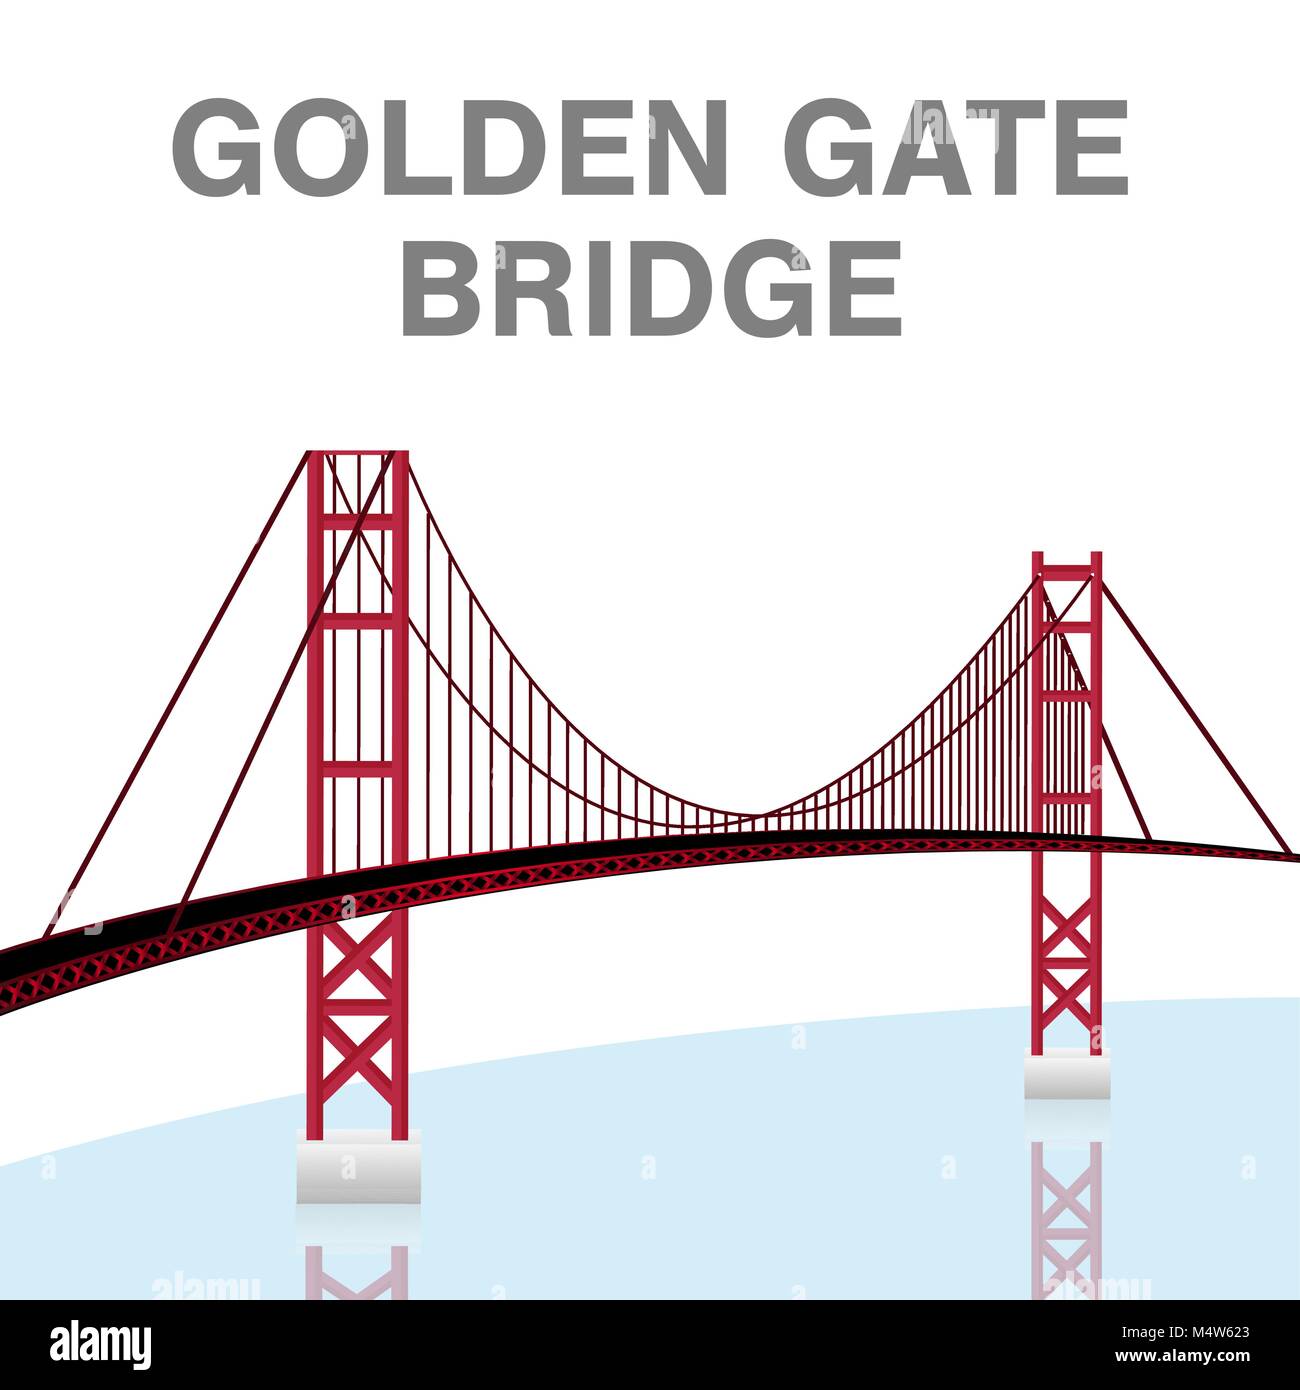 golden gate bridge san francisco california vector Stock Vector